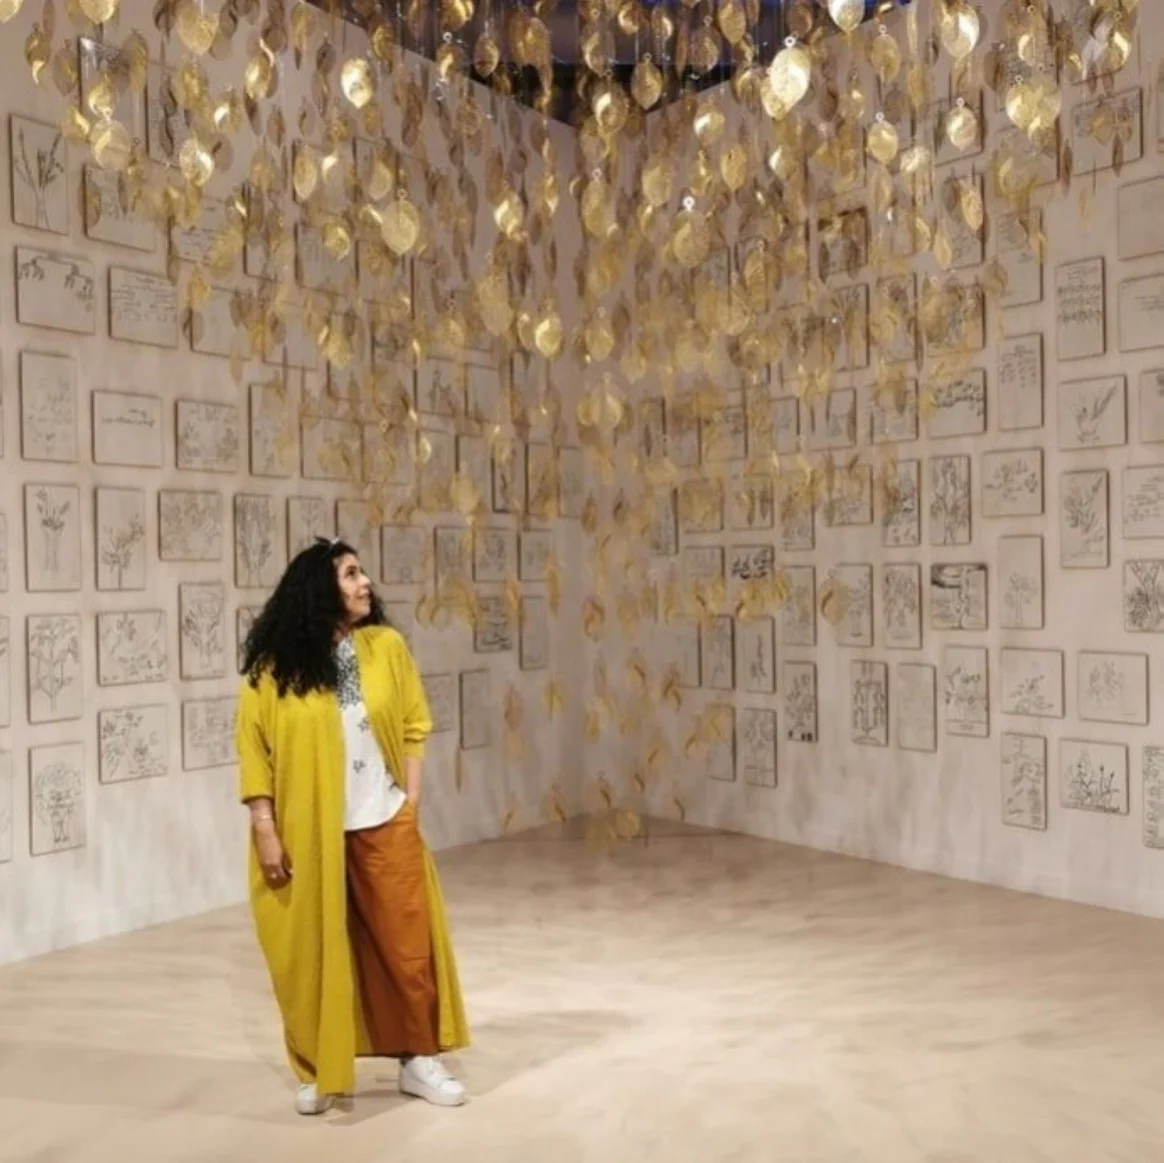 تُعد "الضويان" واحدة من أهم الفنانين المعاصرين السعوديين